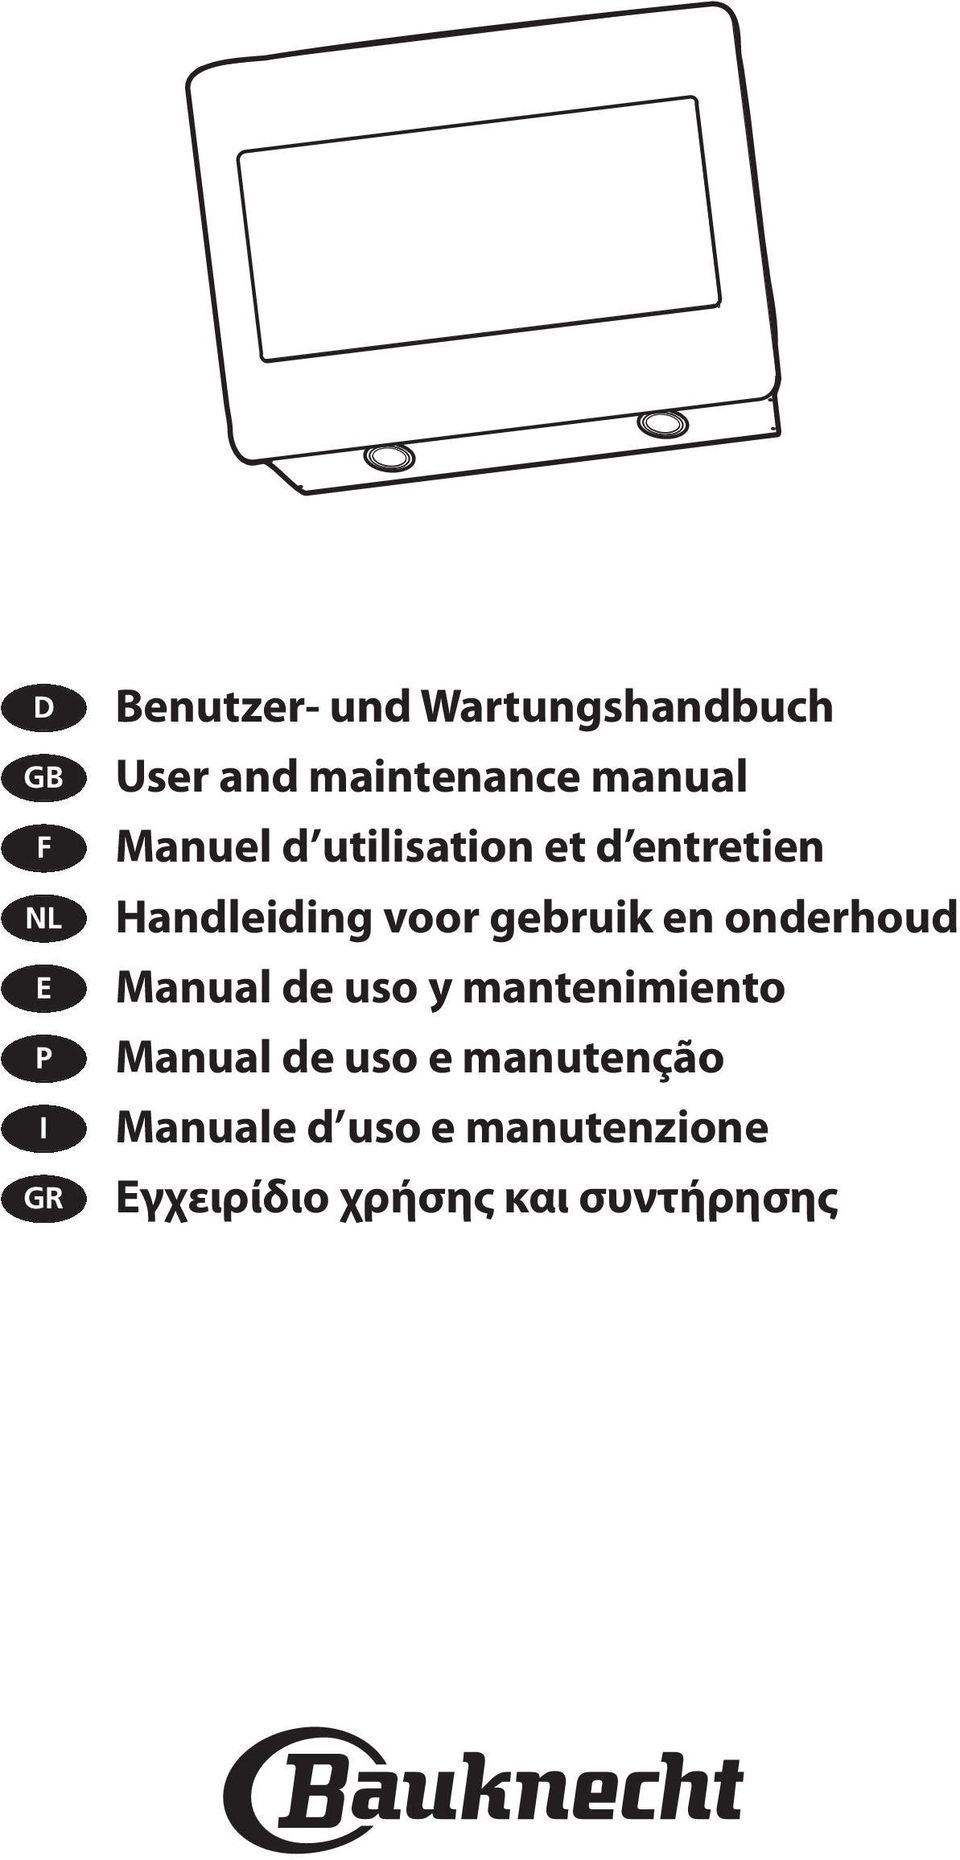 voor gebruik en onderhoud Manual de uso y mantenimiento Manual de